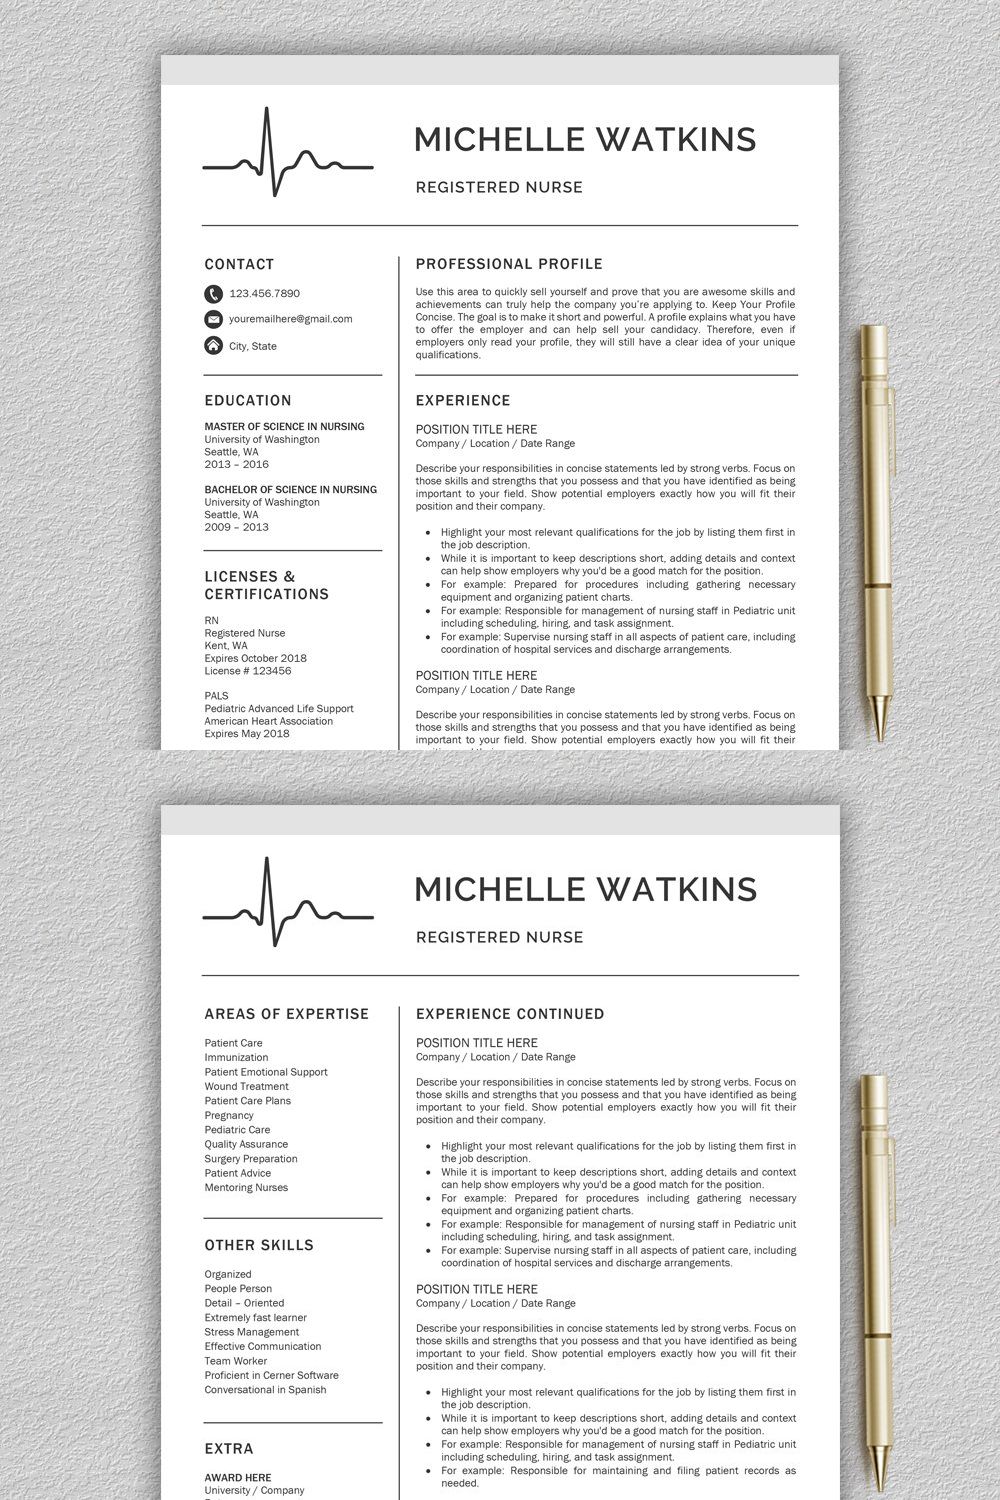 Nurse Resume / Medical CV pinterest preview image.